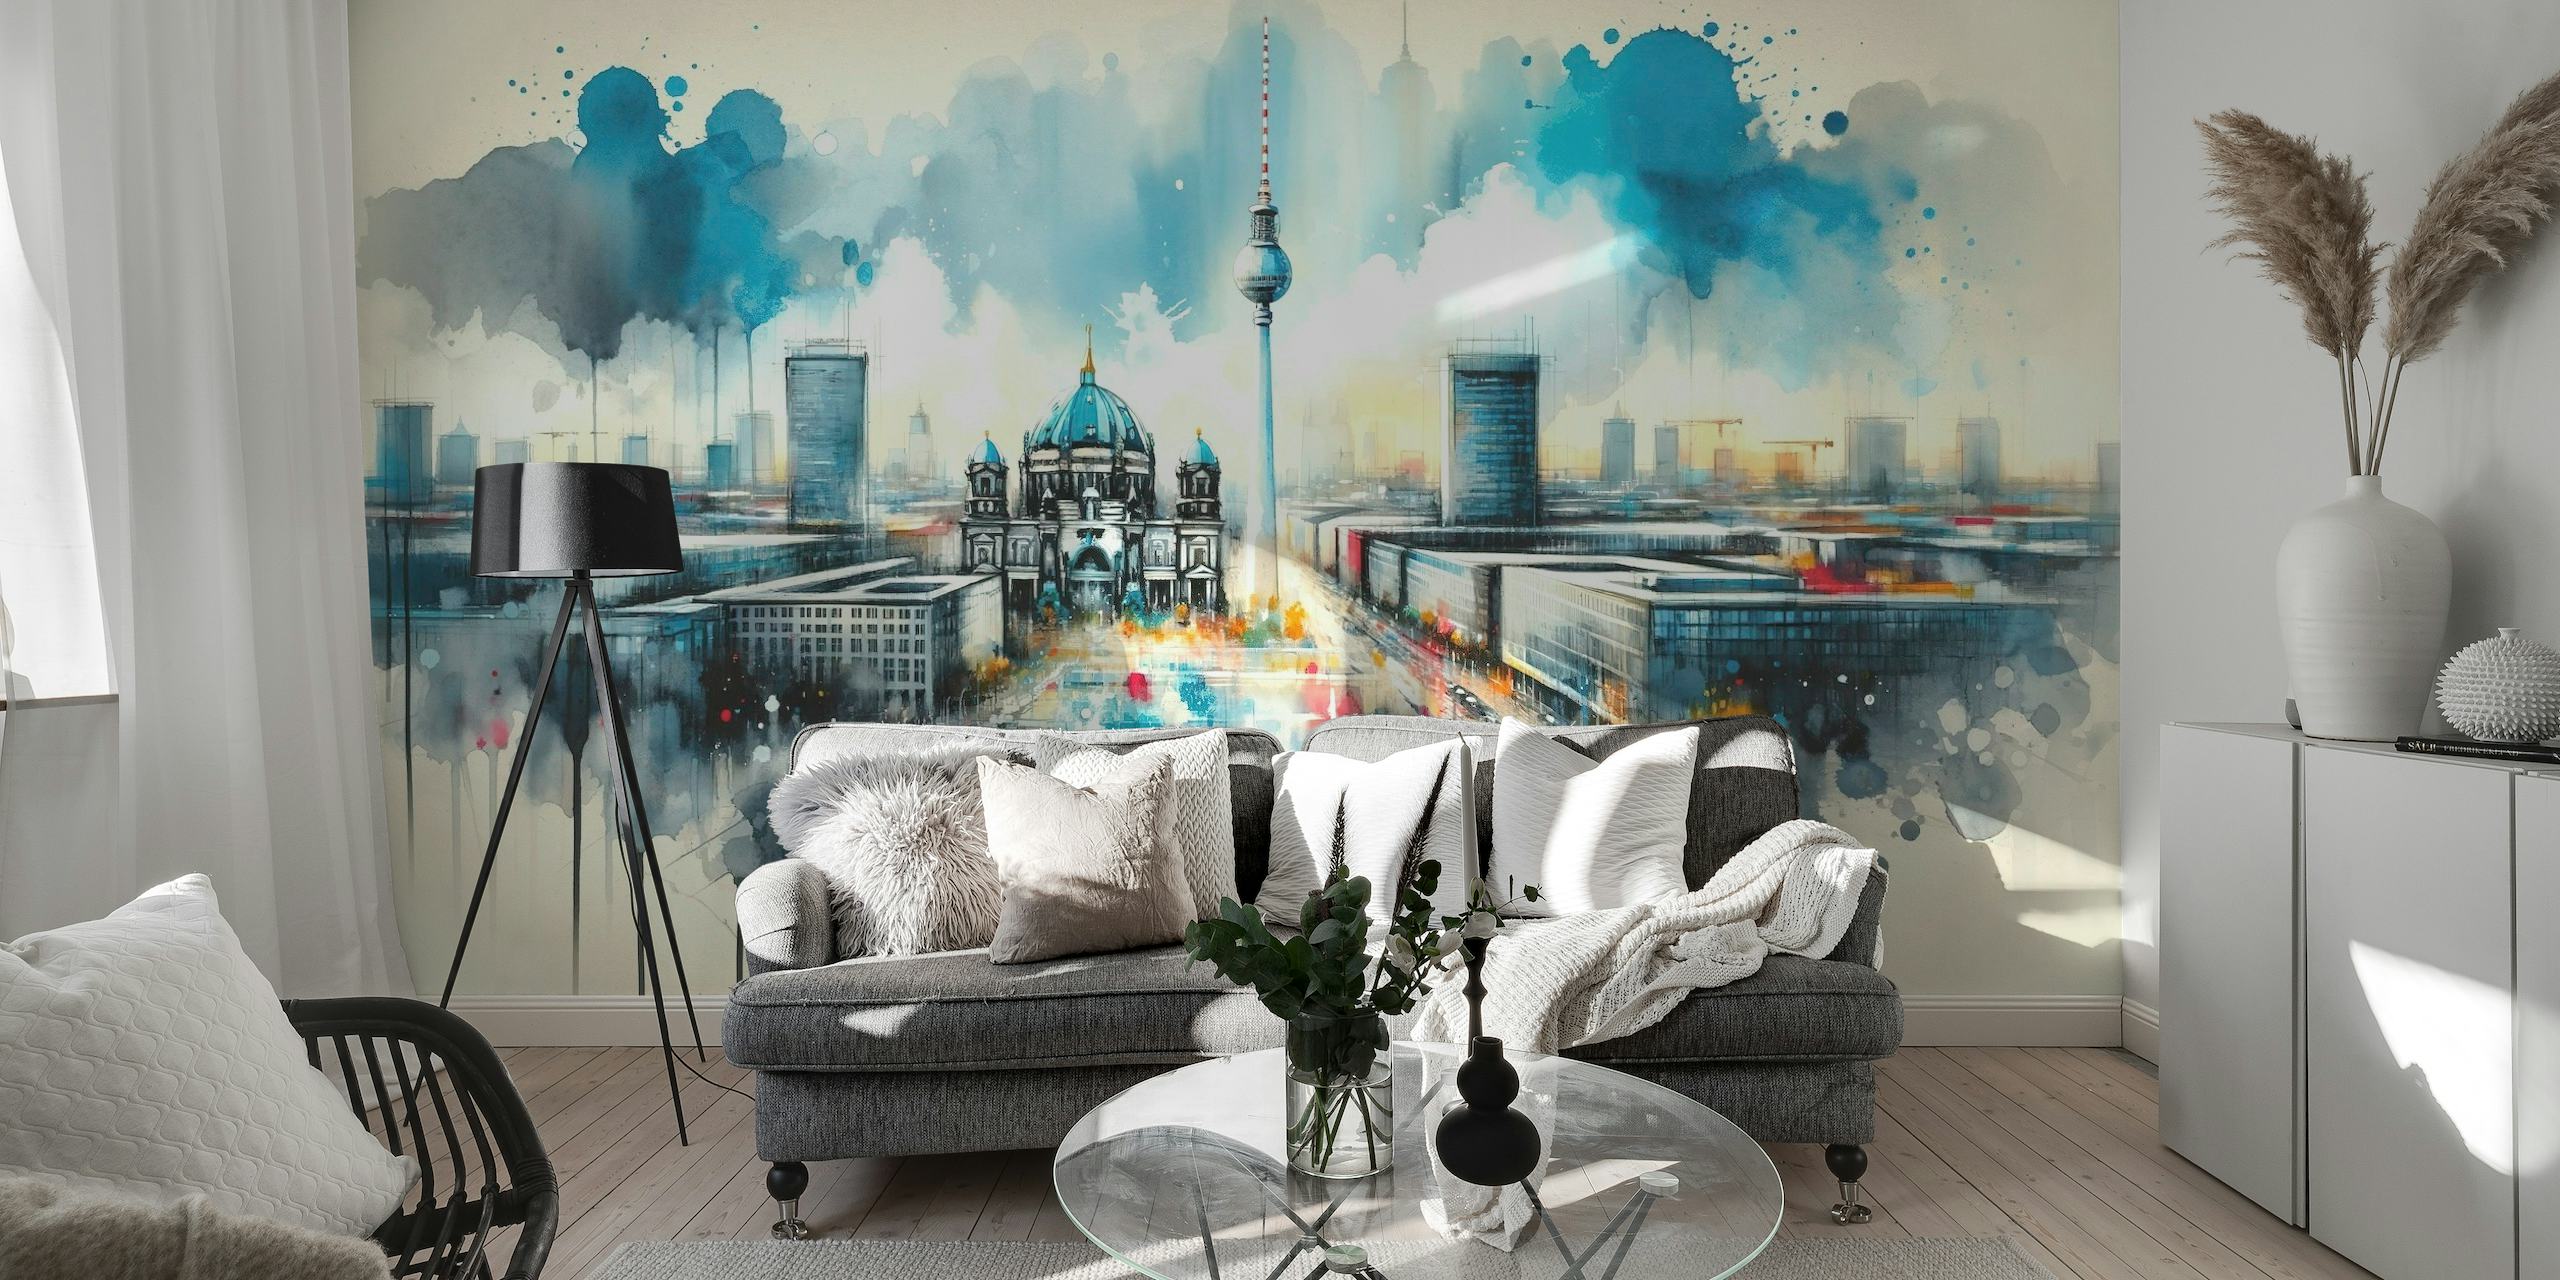 Aquarelmuurschildering van de moderne architectuur van Berlijn met iconische bezienswaardigheden en een dynamische, artistieke interpretatie.